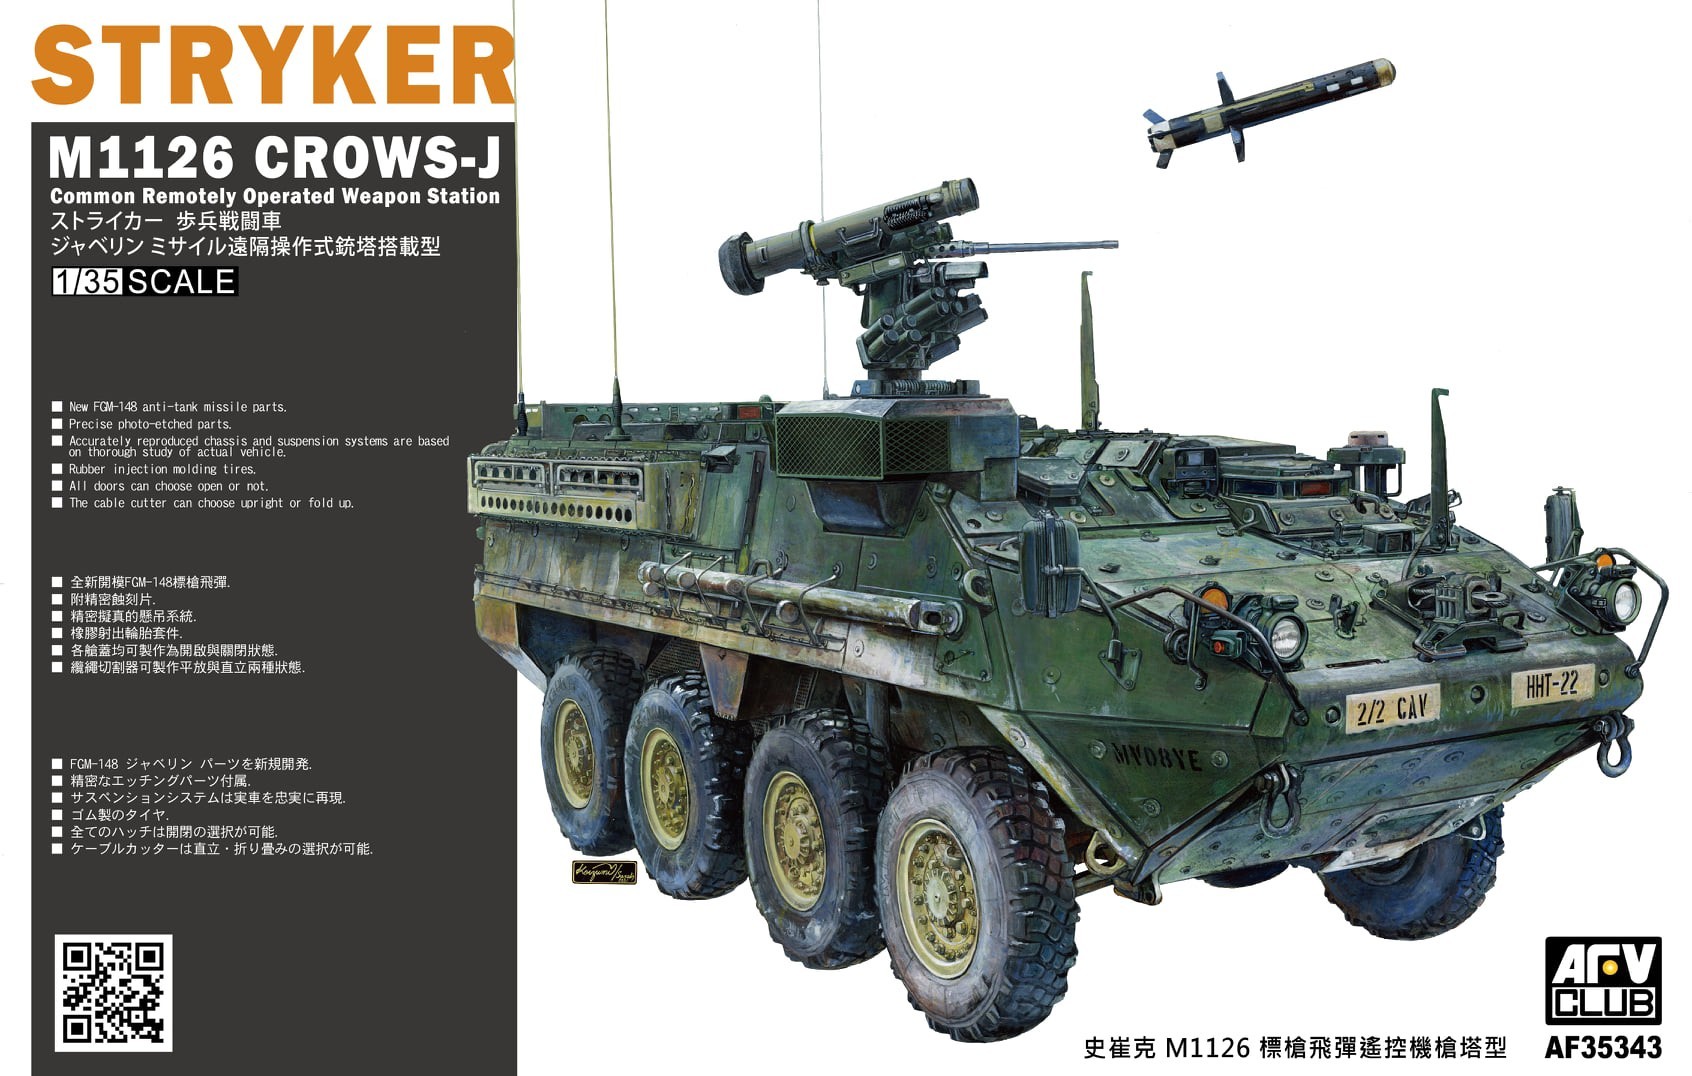 AF35343 - Stryker M1126 CROWS-J